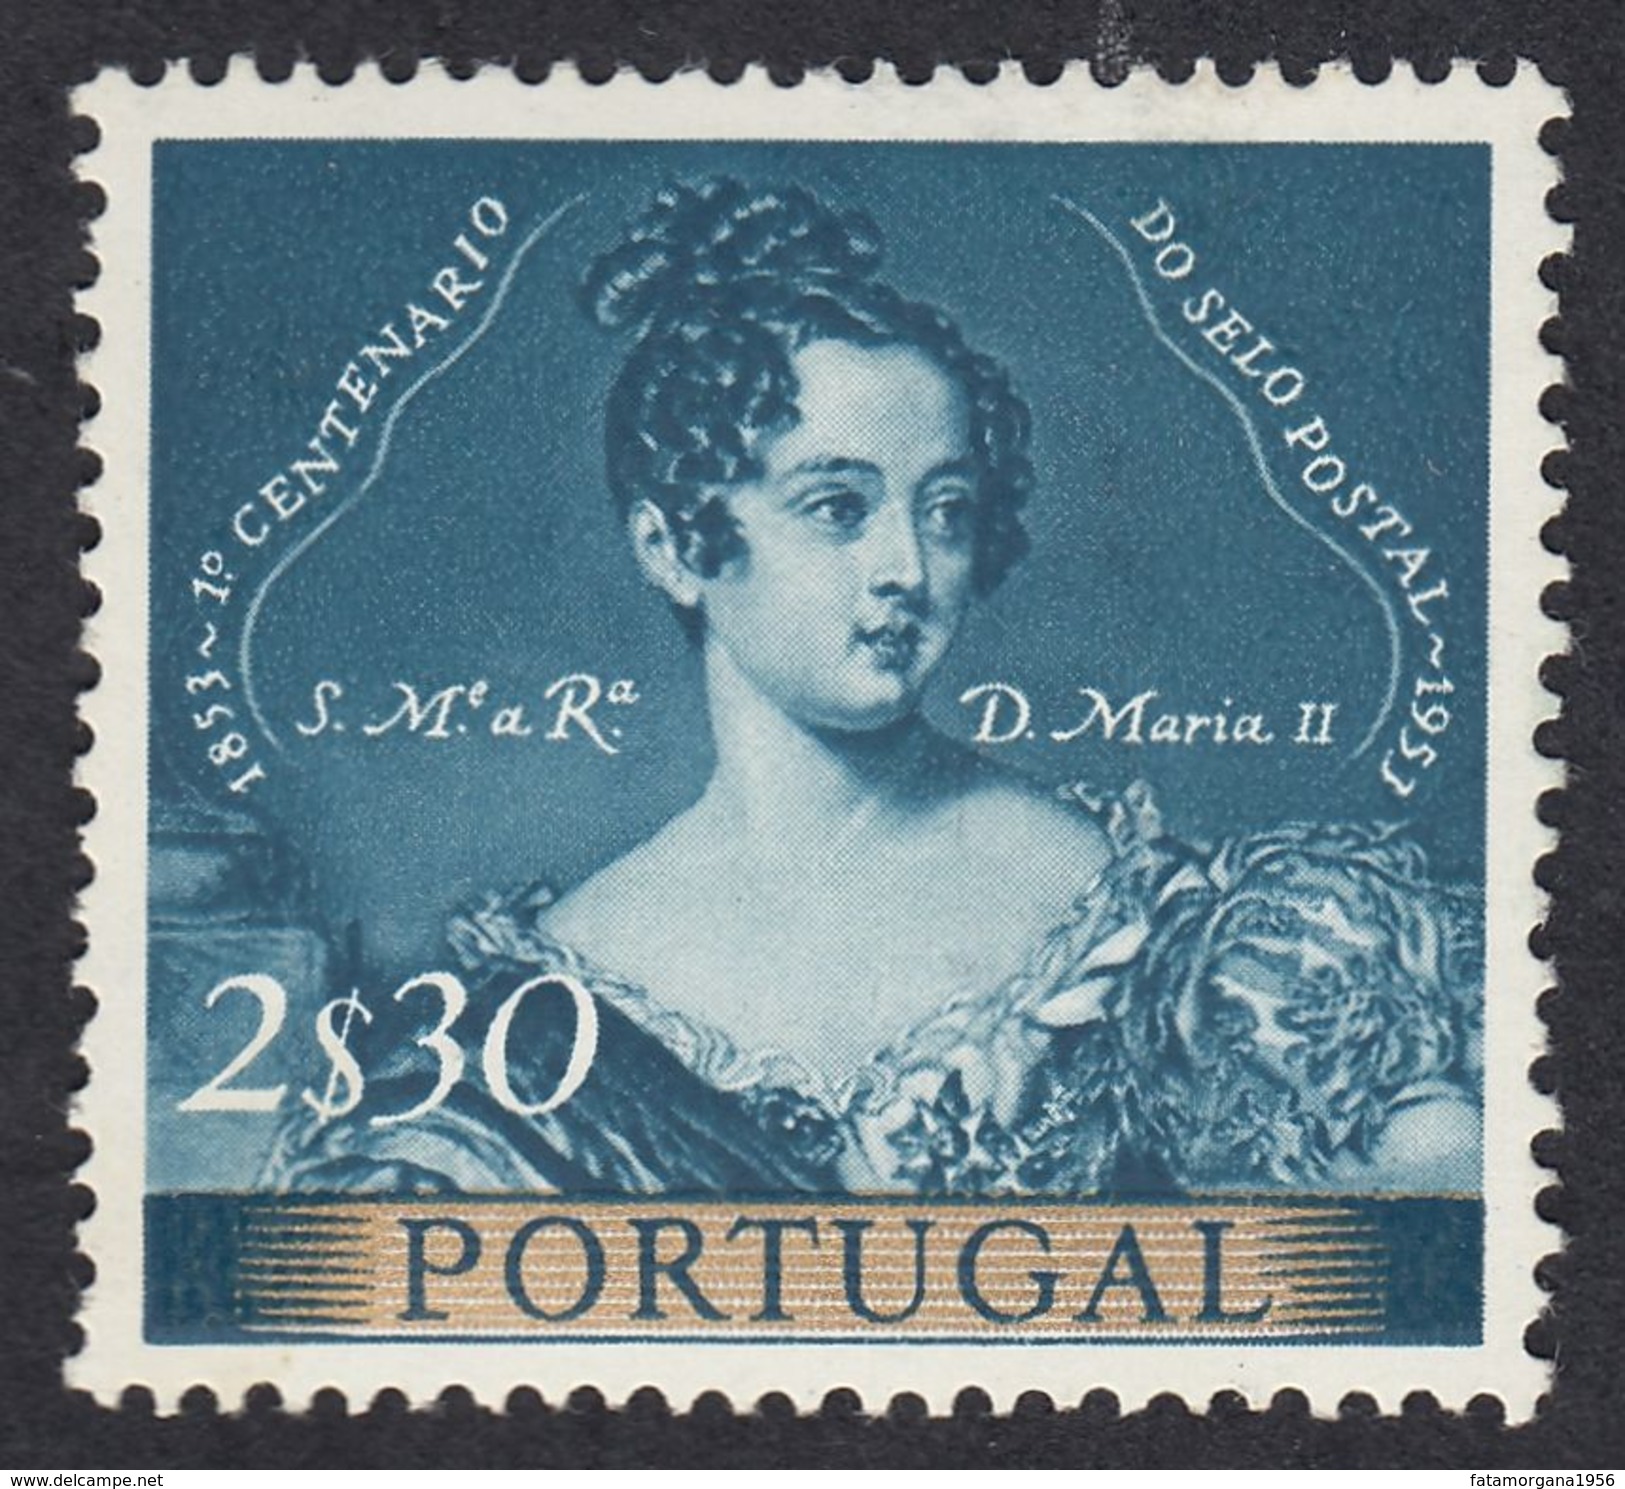 PORTOGALLO PORTUGAL - 1953 - Yvert 800 Nuovo MNH, 2,30 Escudos. - Nuovi